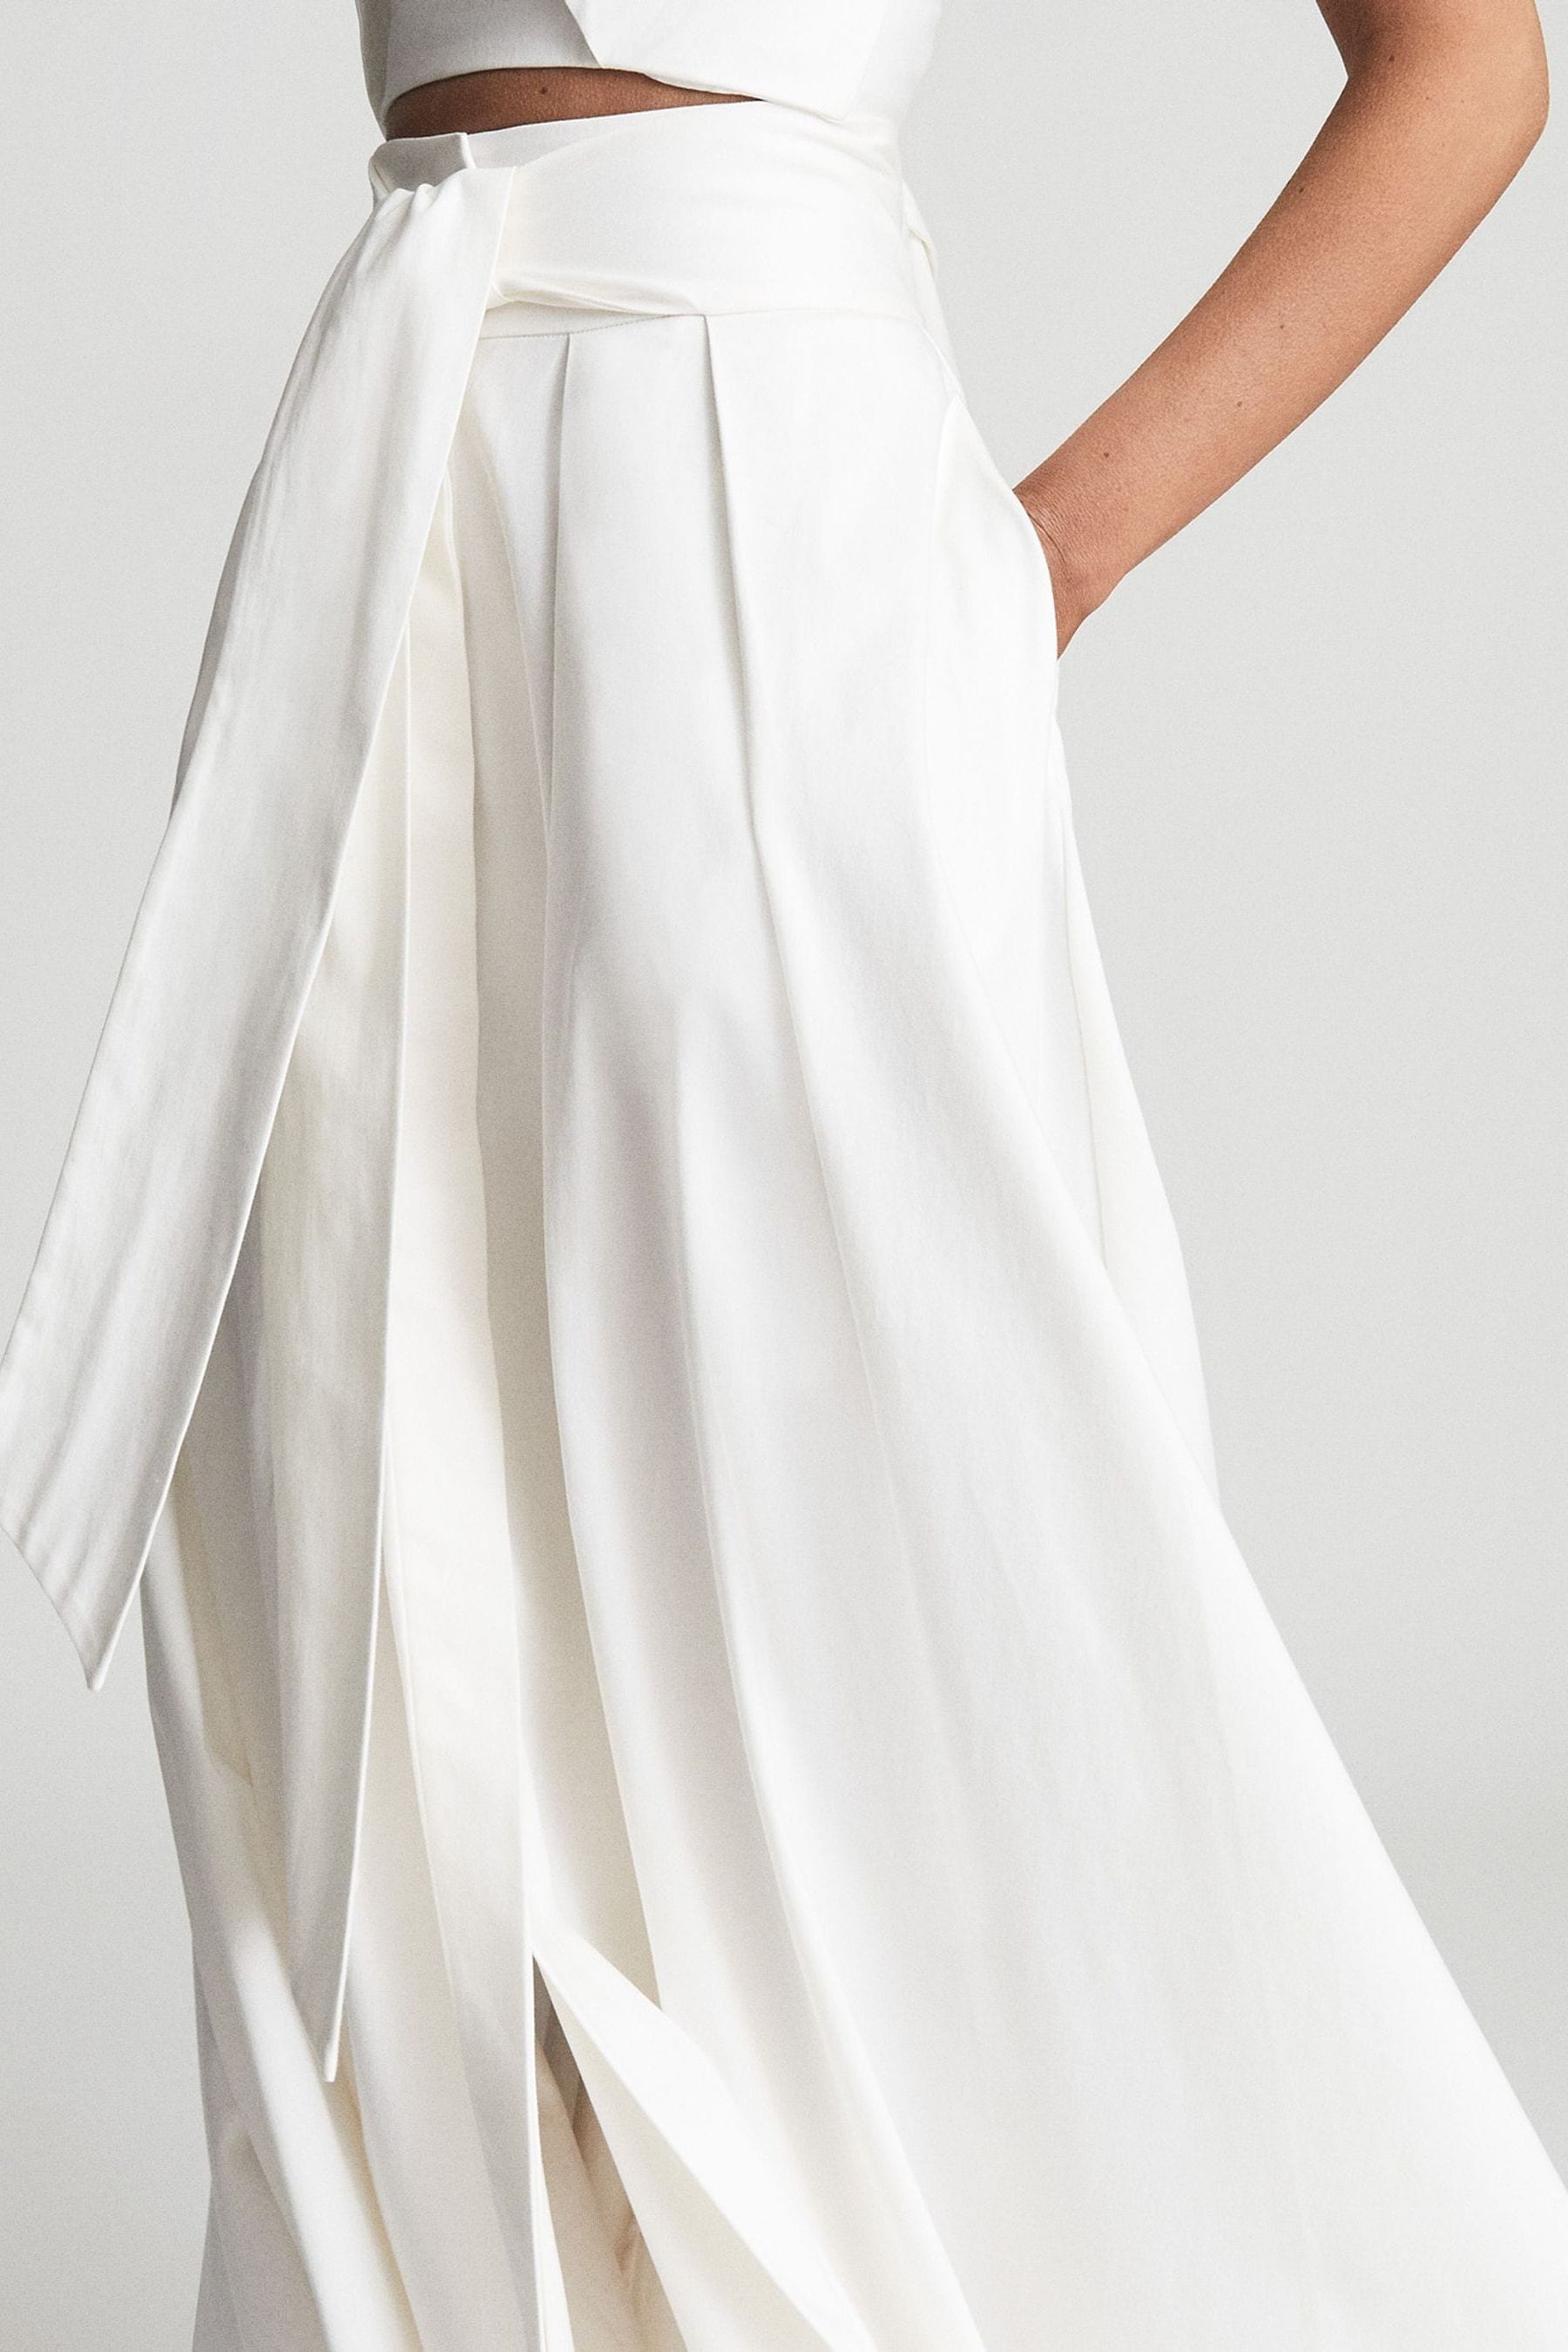 Buy Reiss White Gigi Gather Detailed Maxi Skirt from the Next UK online ...